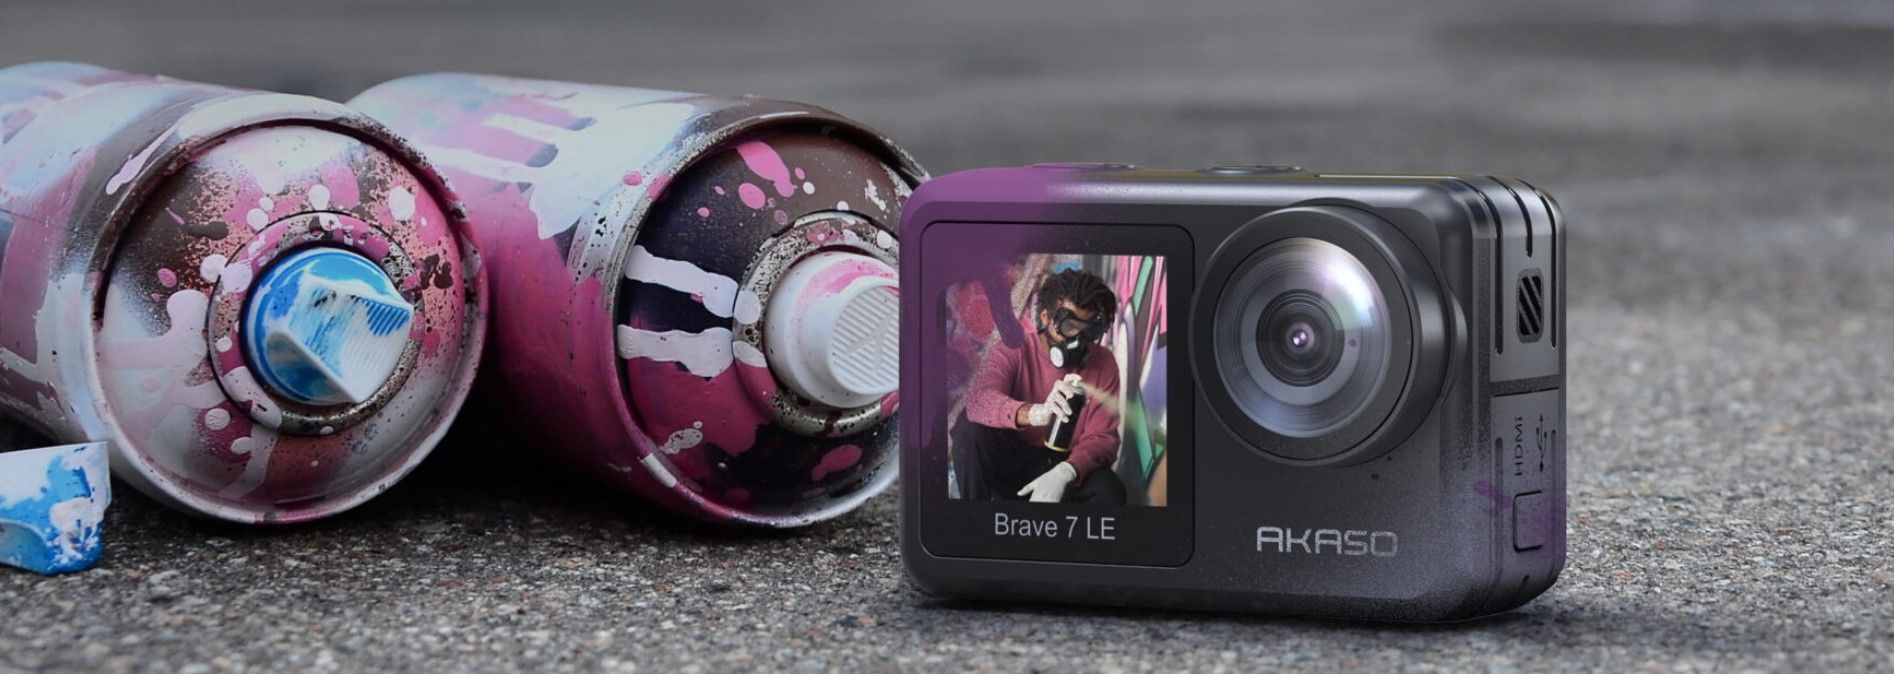 moderná akčná kamera akaso brave 7 le krásne fotografie vysoko kvalitné videá rôzne režimy nabíjacie batérie vysoká odolnosť